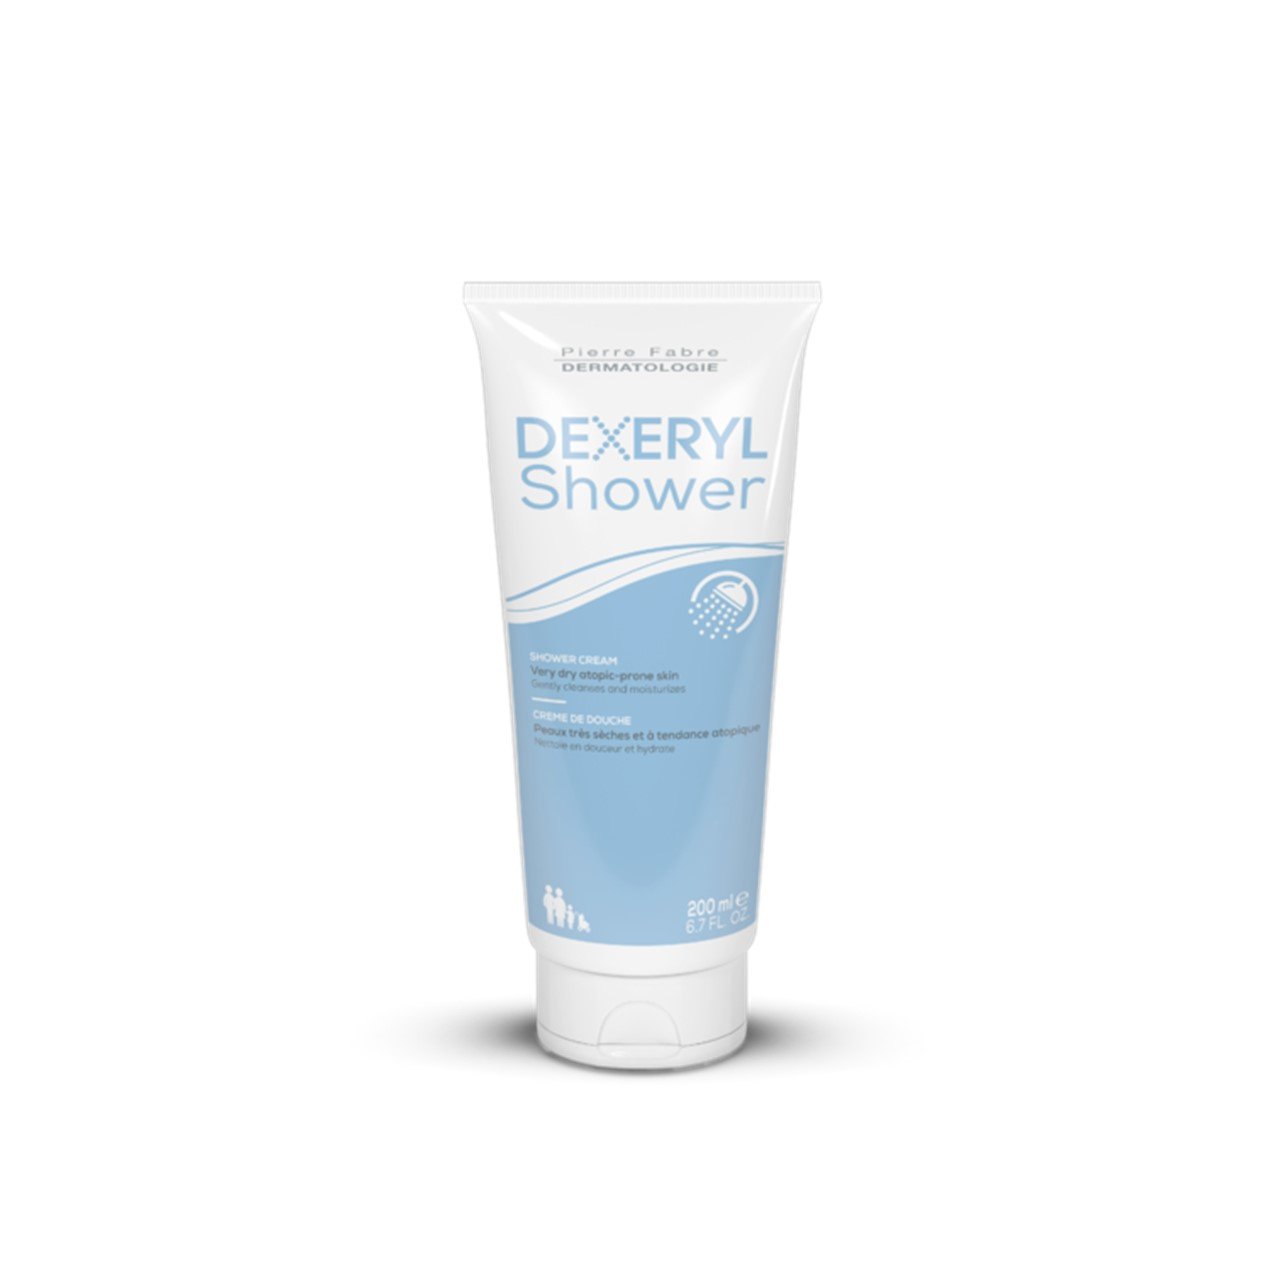 Pierre Fabre Dermatologie Dexeryl Shower Cleansing Cream 200ml